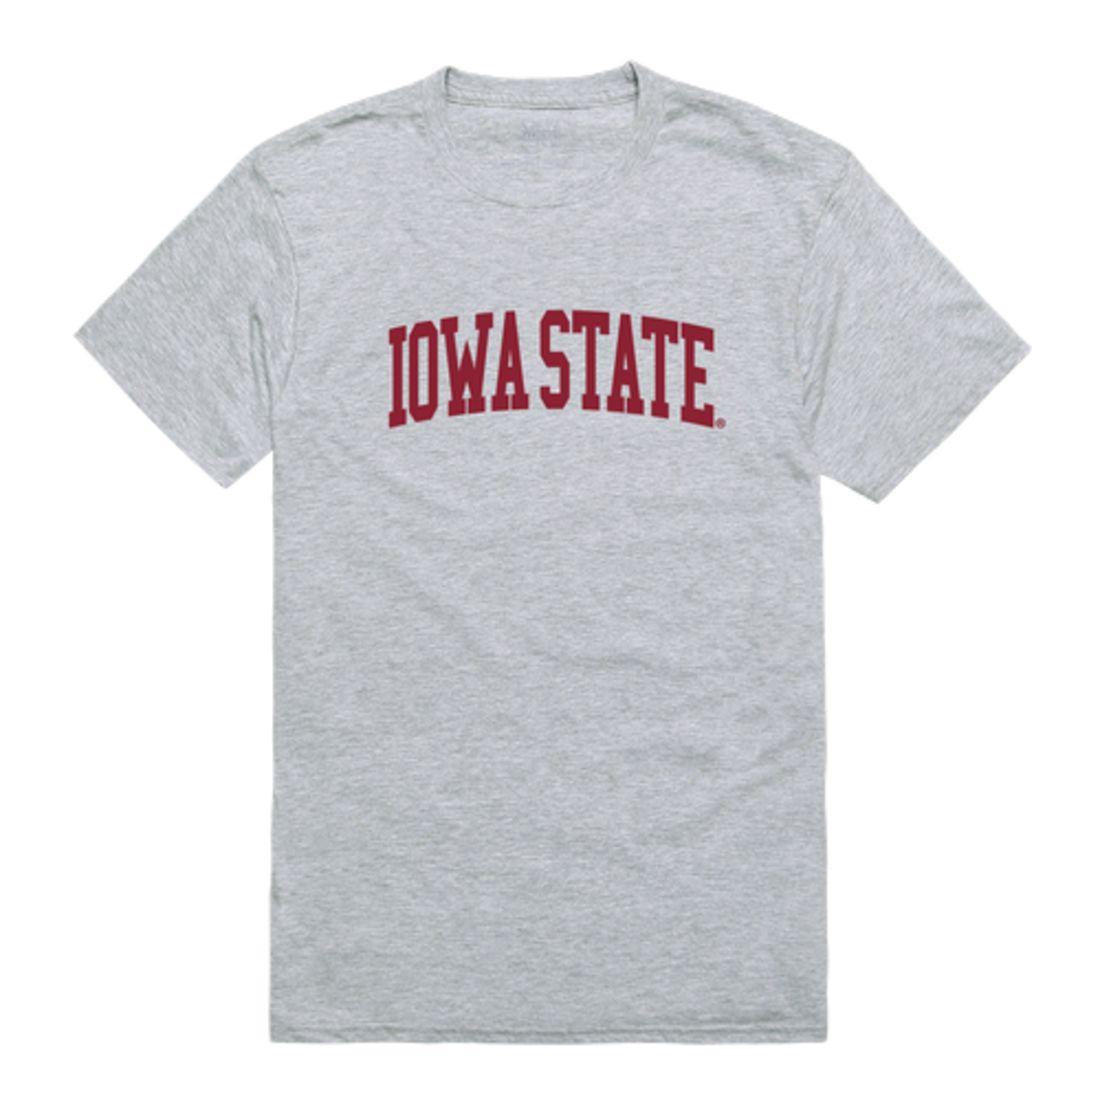 ISU Iowa State University Cyclones Game Day T-Shirt